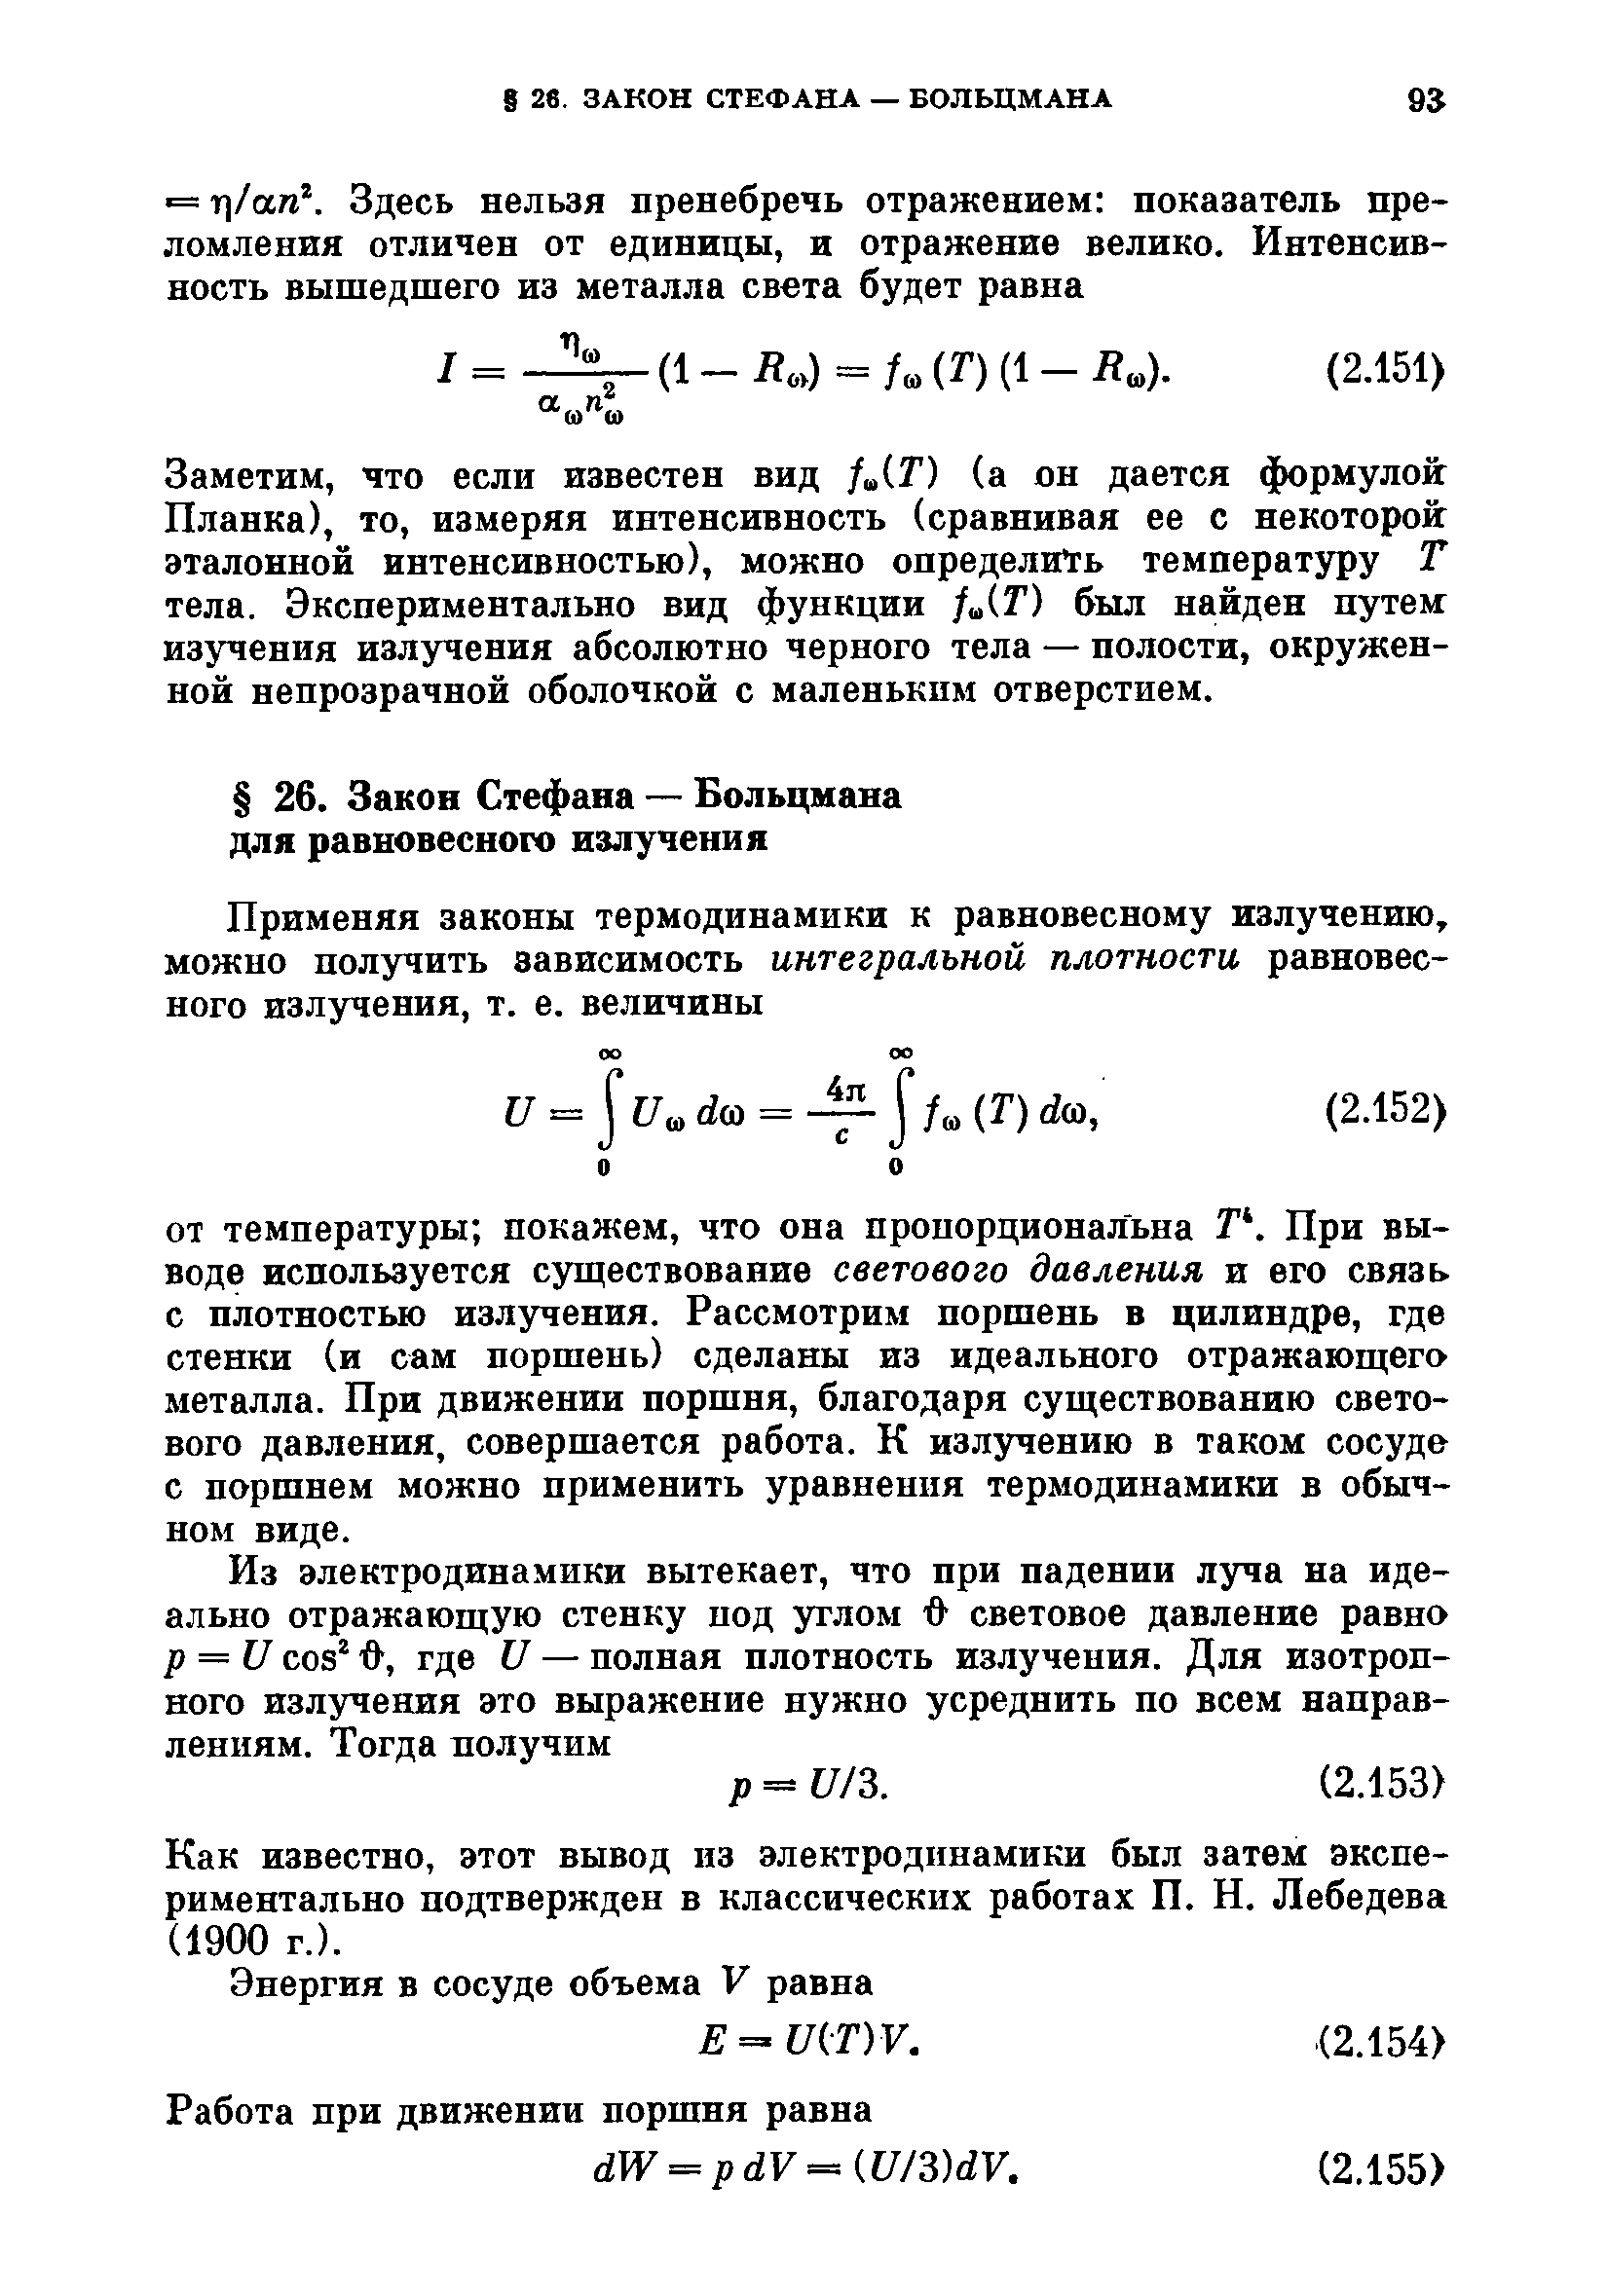 Как известно, этот вывод из электродинамики был затем экспериментально подтвержден в классических работах П. Н. Лебедева (1900 г.).
